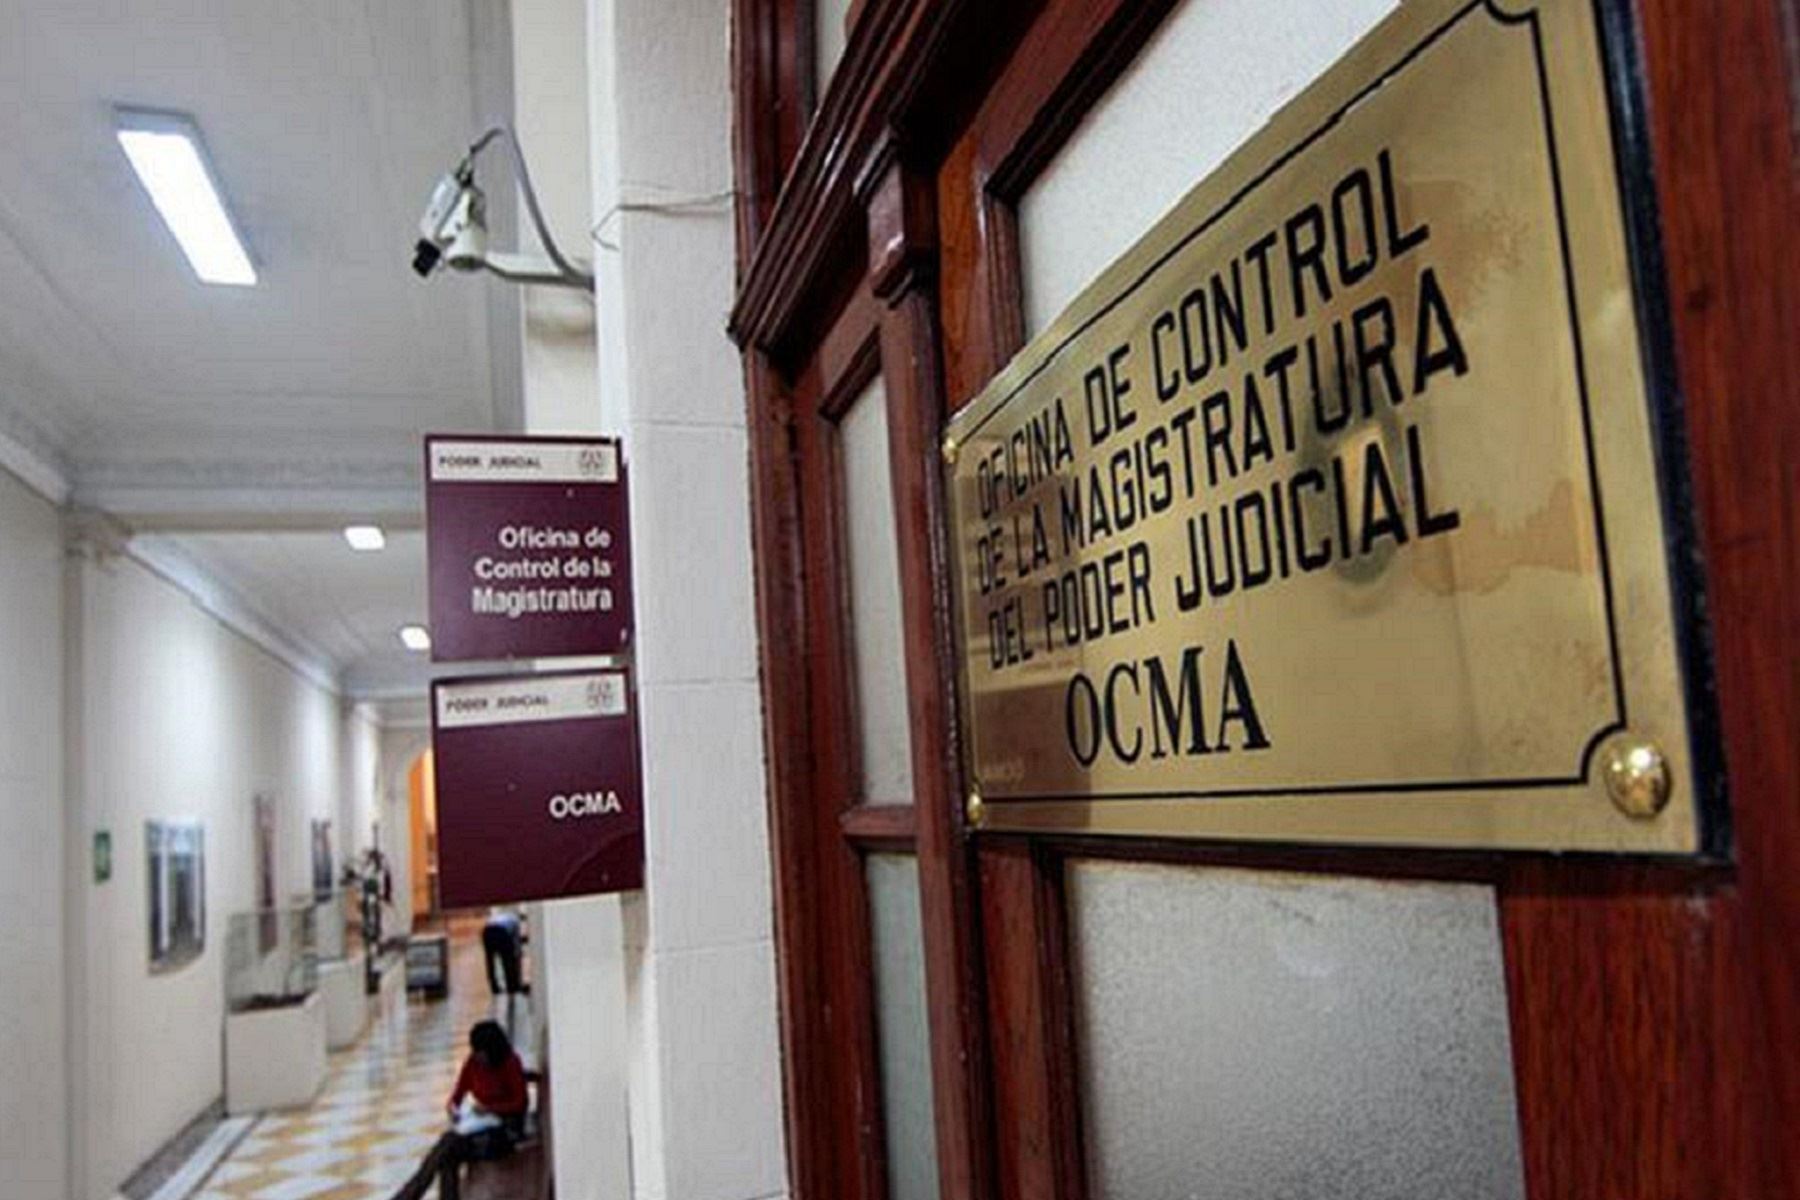 Ocma propone destitución de juez y dos servidores de la Corte de Piura por cometer faltas graves. ANDINA/Difusión